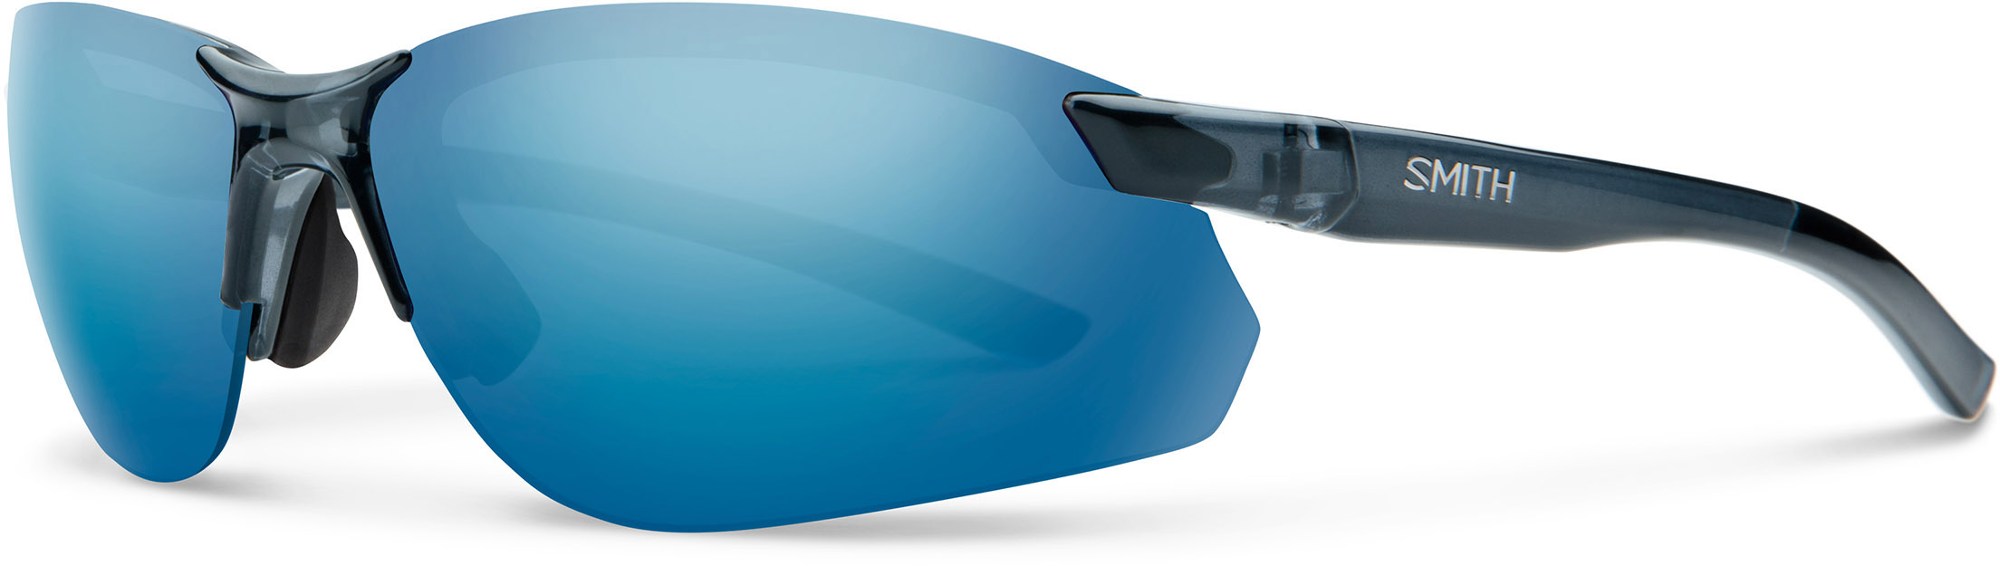 Поляризованные солнцезащитные очки Parallel 2 Max Smith, синий